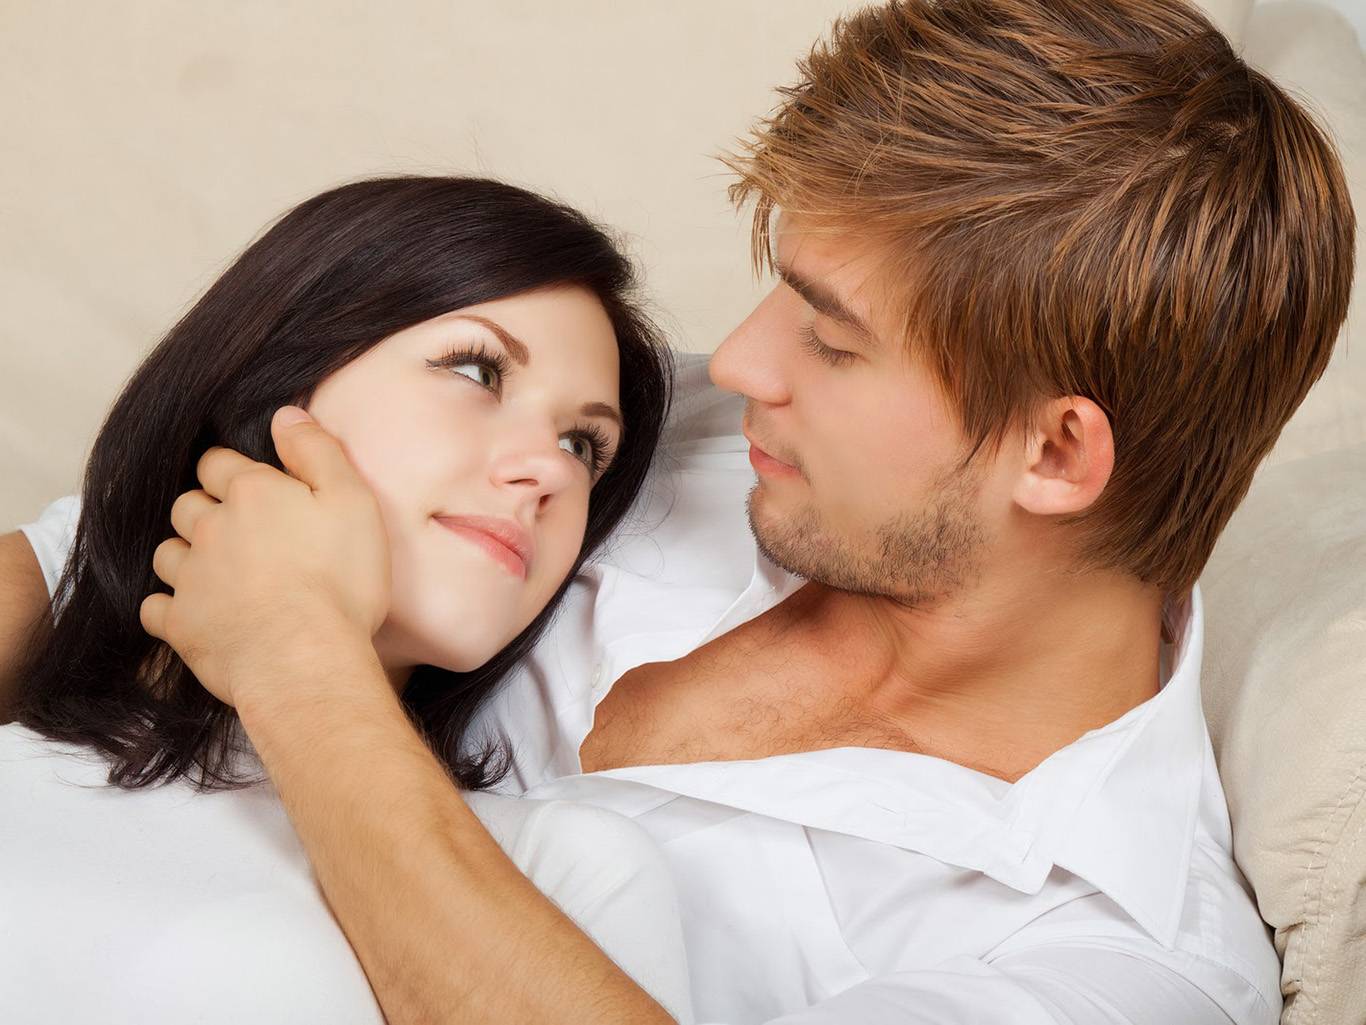 Психология отношений между мужчиной и женщиной - 6 правил счастливых отношений